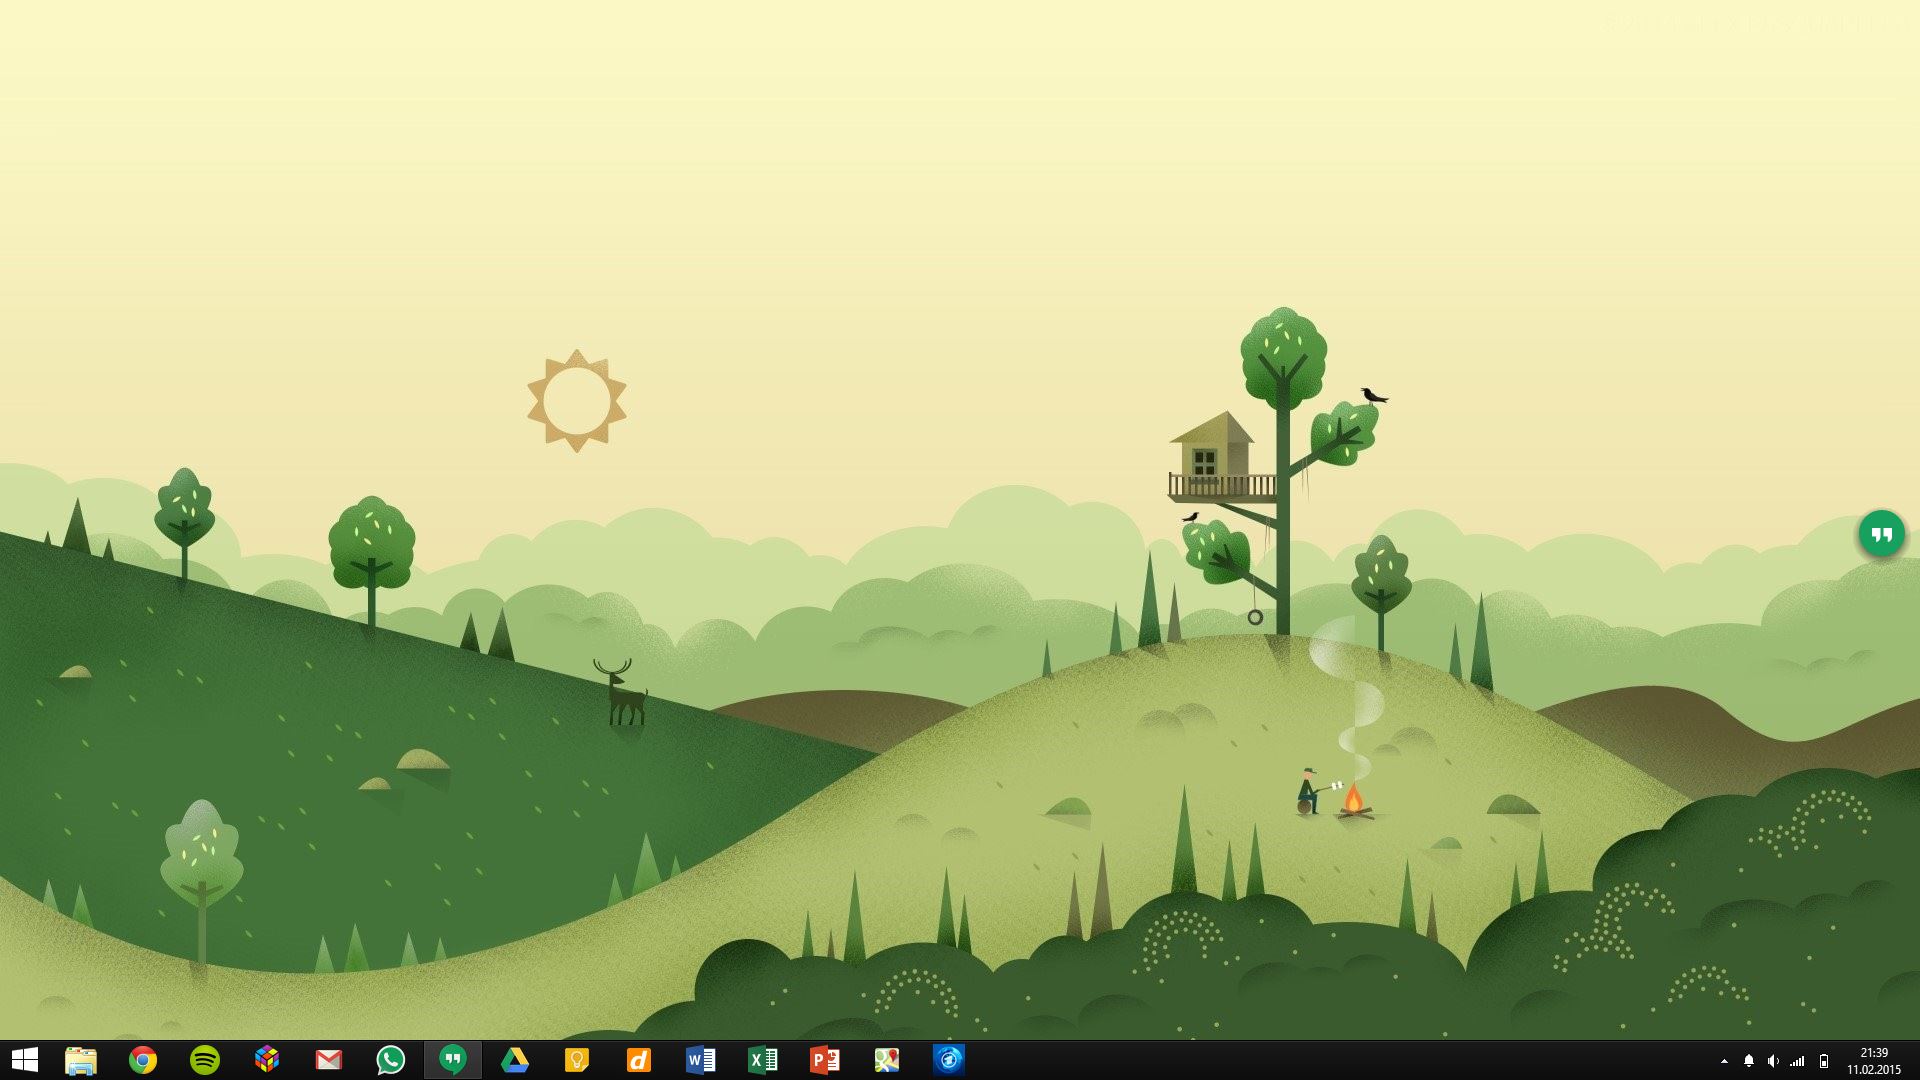 Simple Desktop With Google Now Inspired Wallpaper Desktops